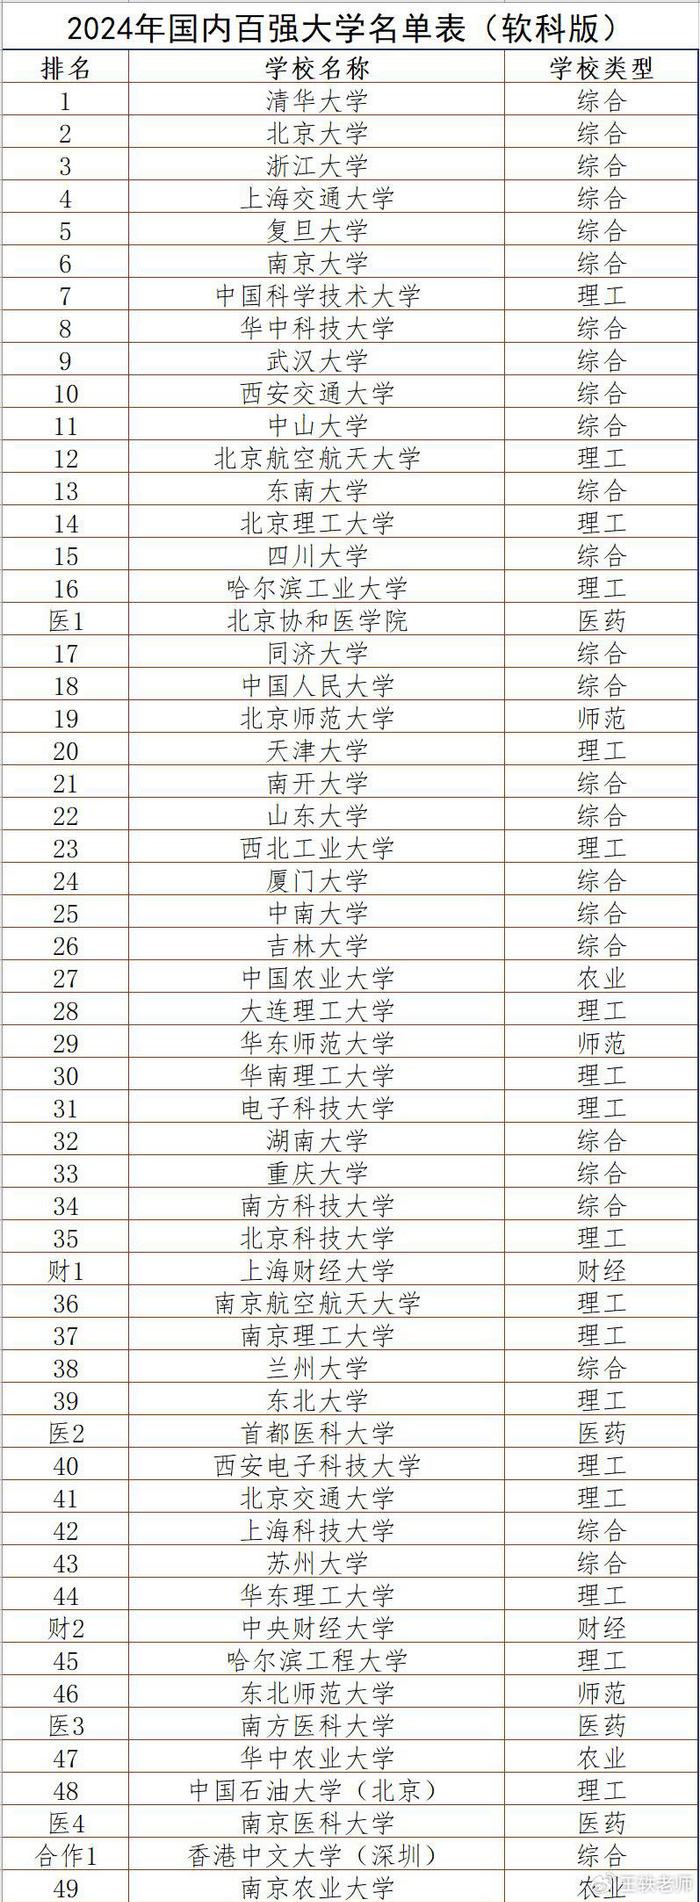 新版2024中国大学排名公布,排名国内前100位大学名单出炉